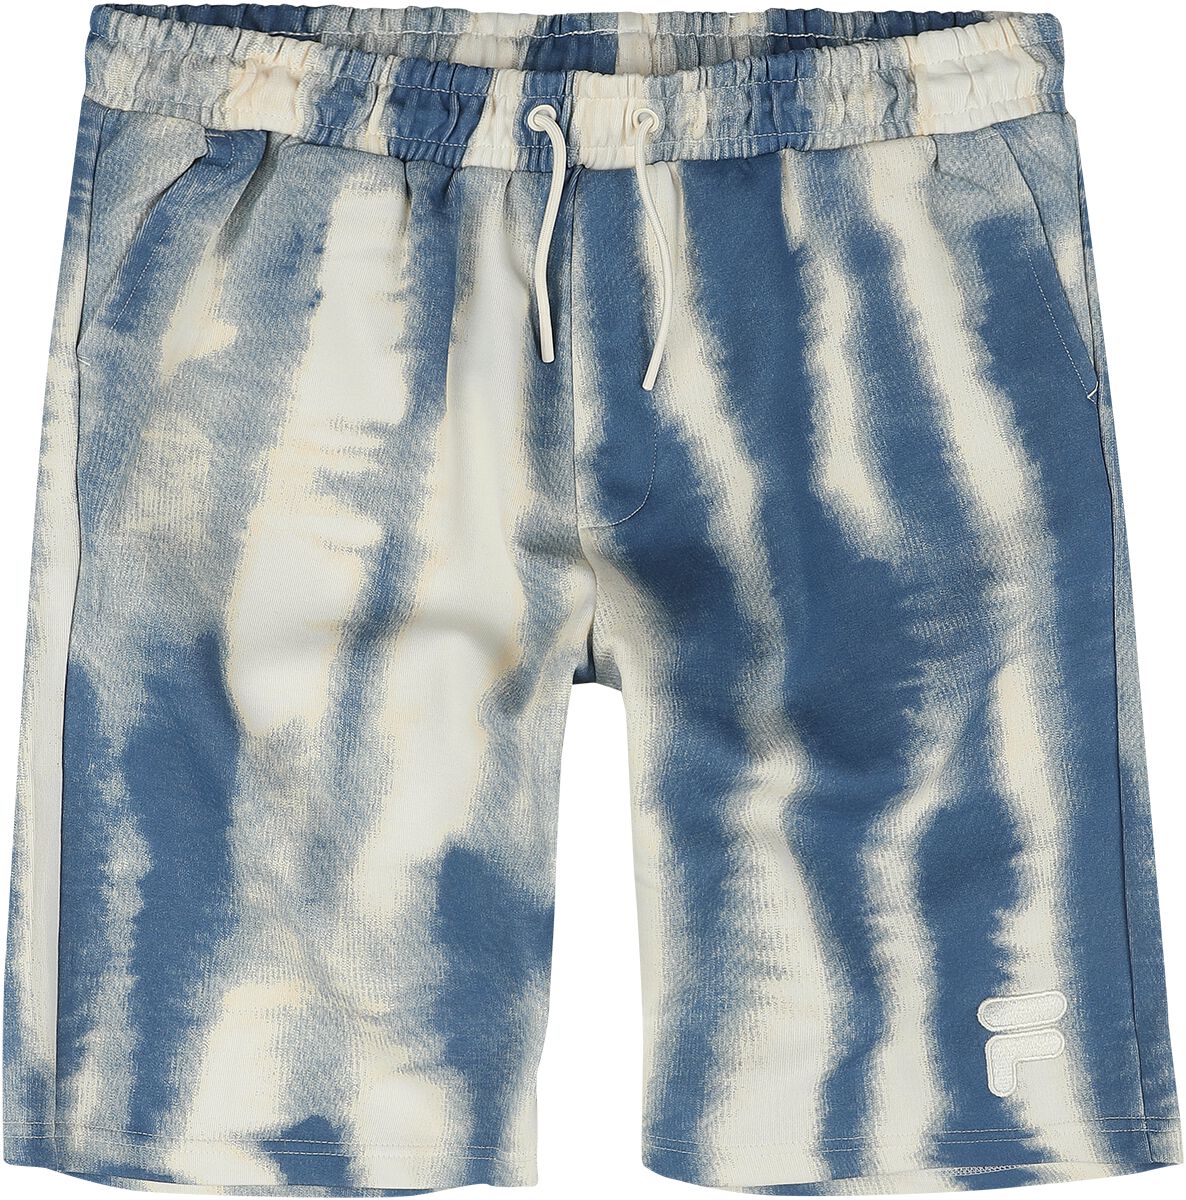 Short de Fila - CASARES AOP baggy shorts - S à XXL - pour Homme - blanc/bleu